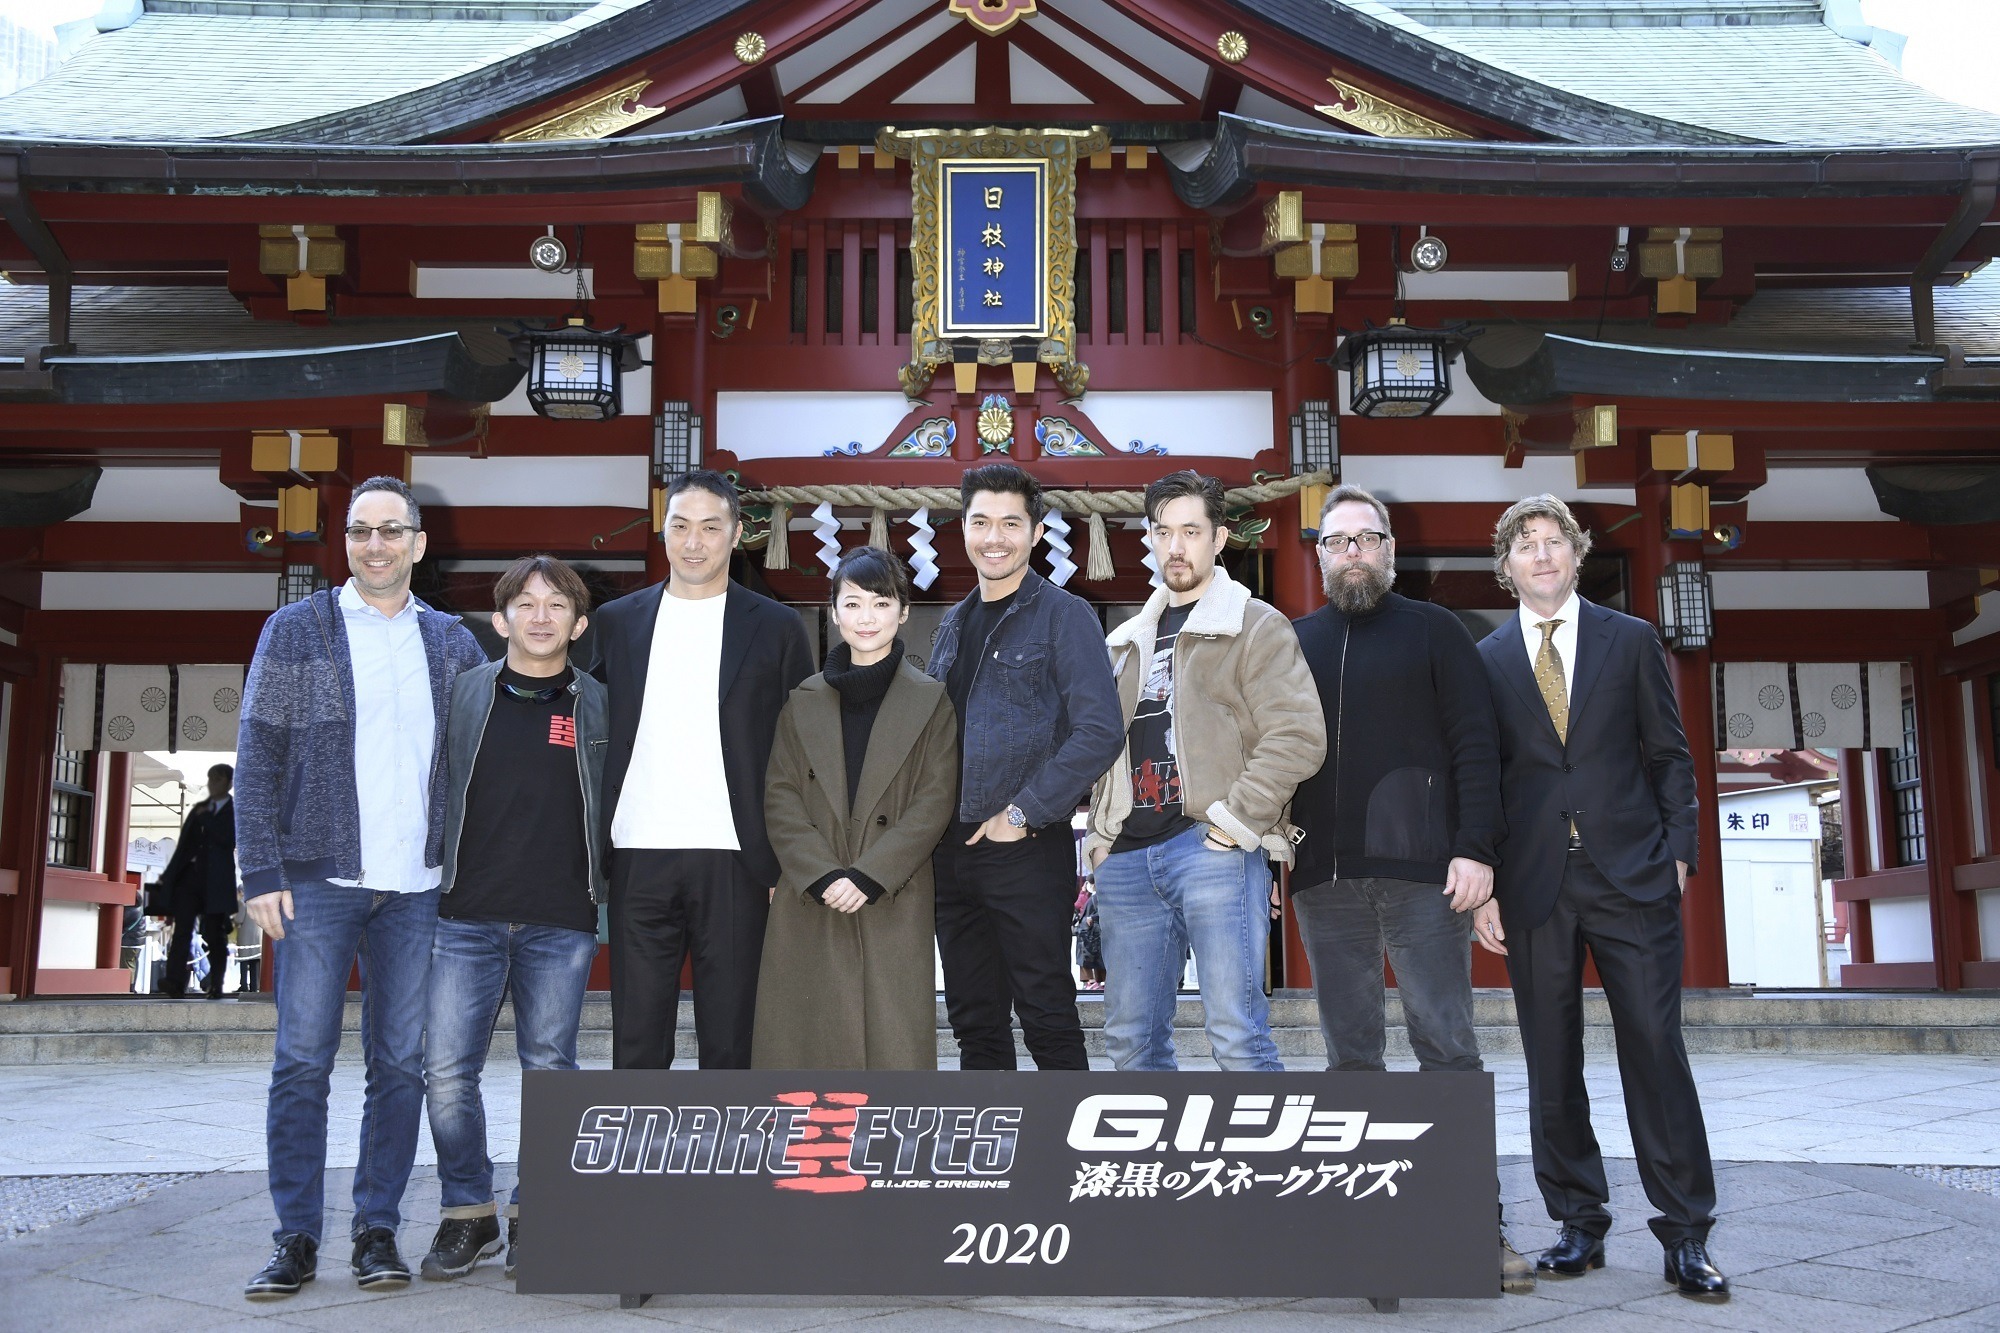 G.I.ジョー』最新作は日本で撮影！主演ヘンリー・ゴールディング「今まで開拓されなかった領域に」 | cinemacafe.net